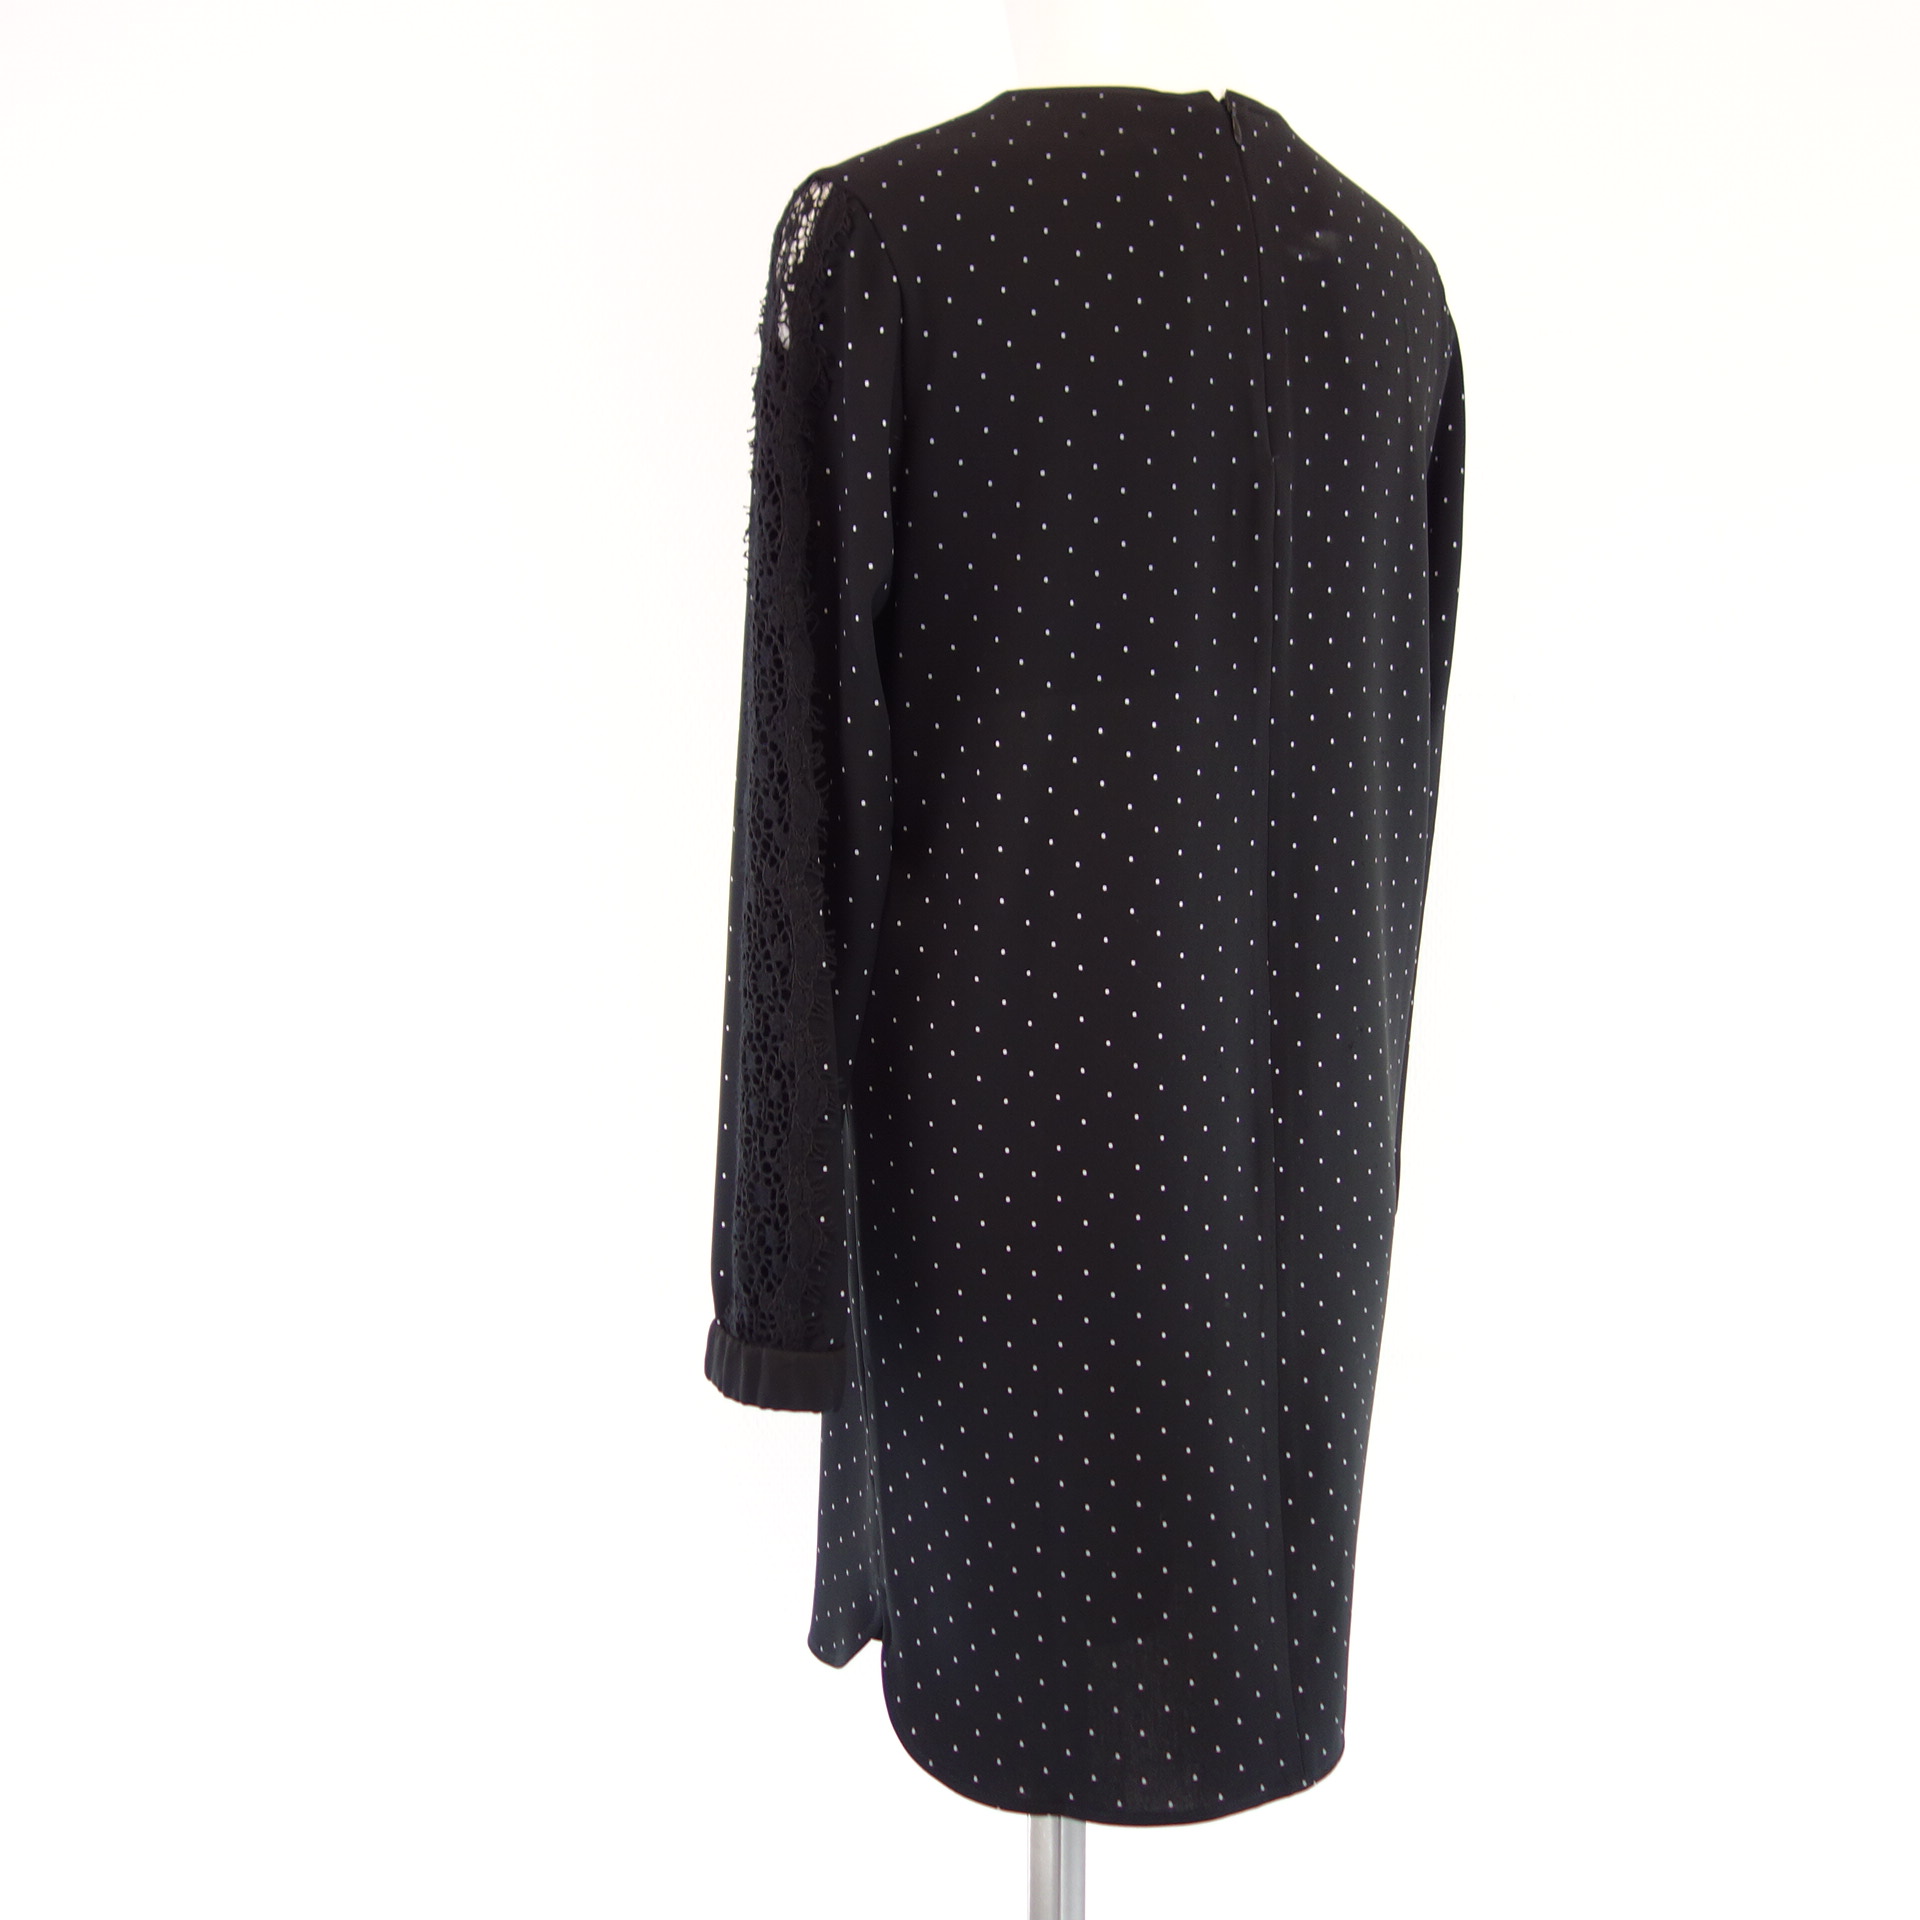 MARC CAIN Damen Kleid Midi Tunikakleid Blusenkleid Schwarz Punkte Spitze Np 249 Neu